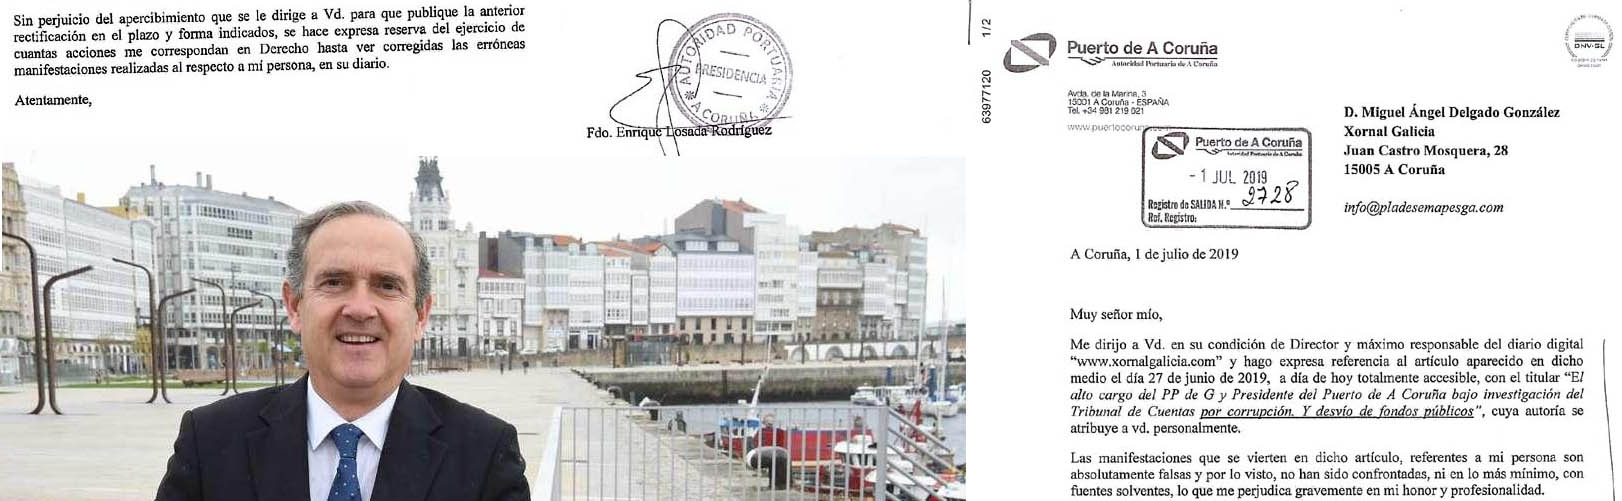 Sr Presidente del Puerto de A Coruña ¡ es Usted un cobarde ! nos amenaza con acciones legales sumándose al acoso de Mar Sánchez Sierra y depués recula en sus amenazas.